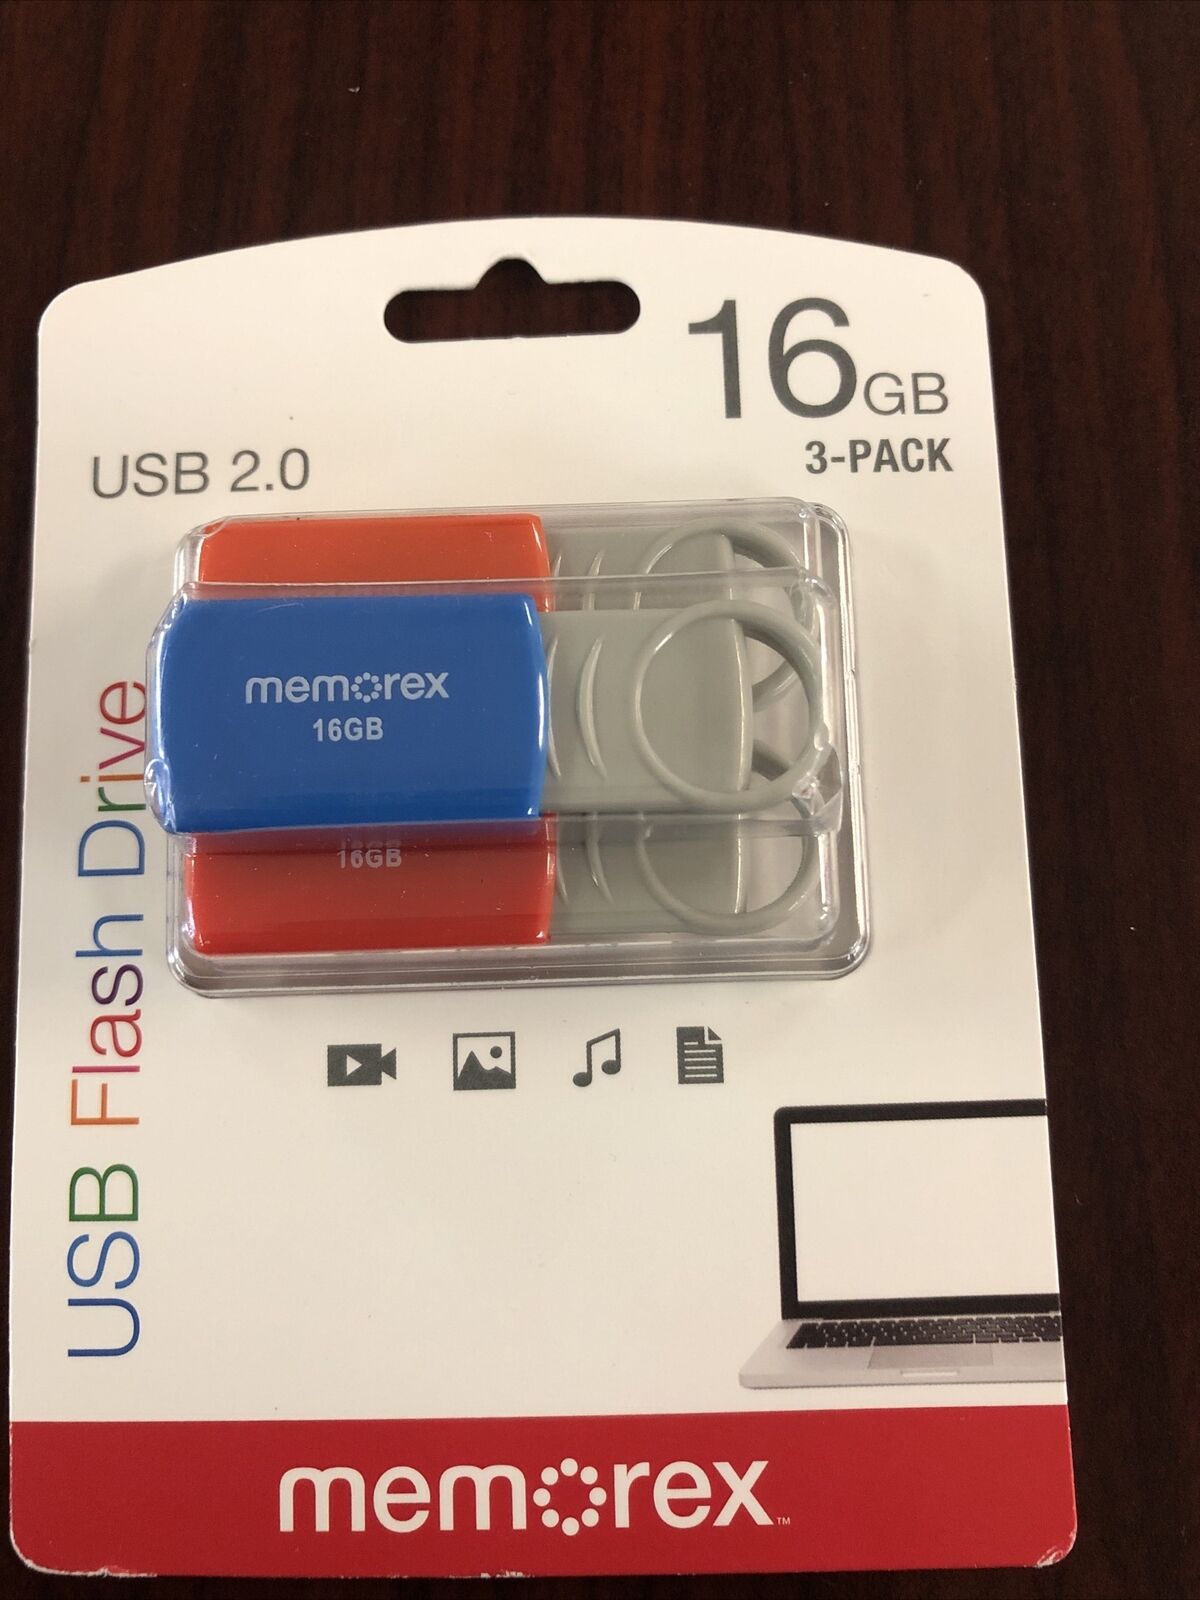 3-Pack 16gb Memorex USB Flash Drive 2.0 New